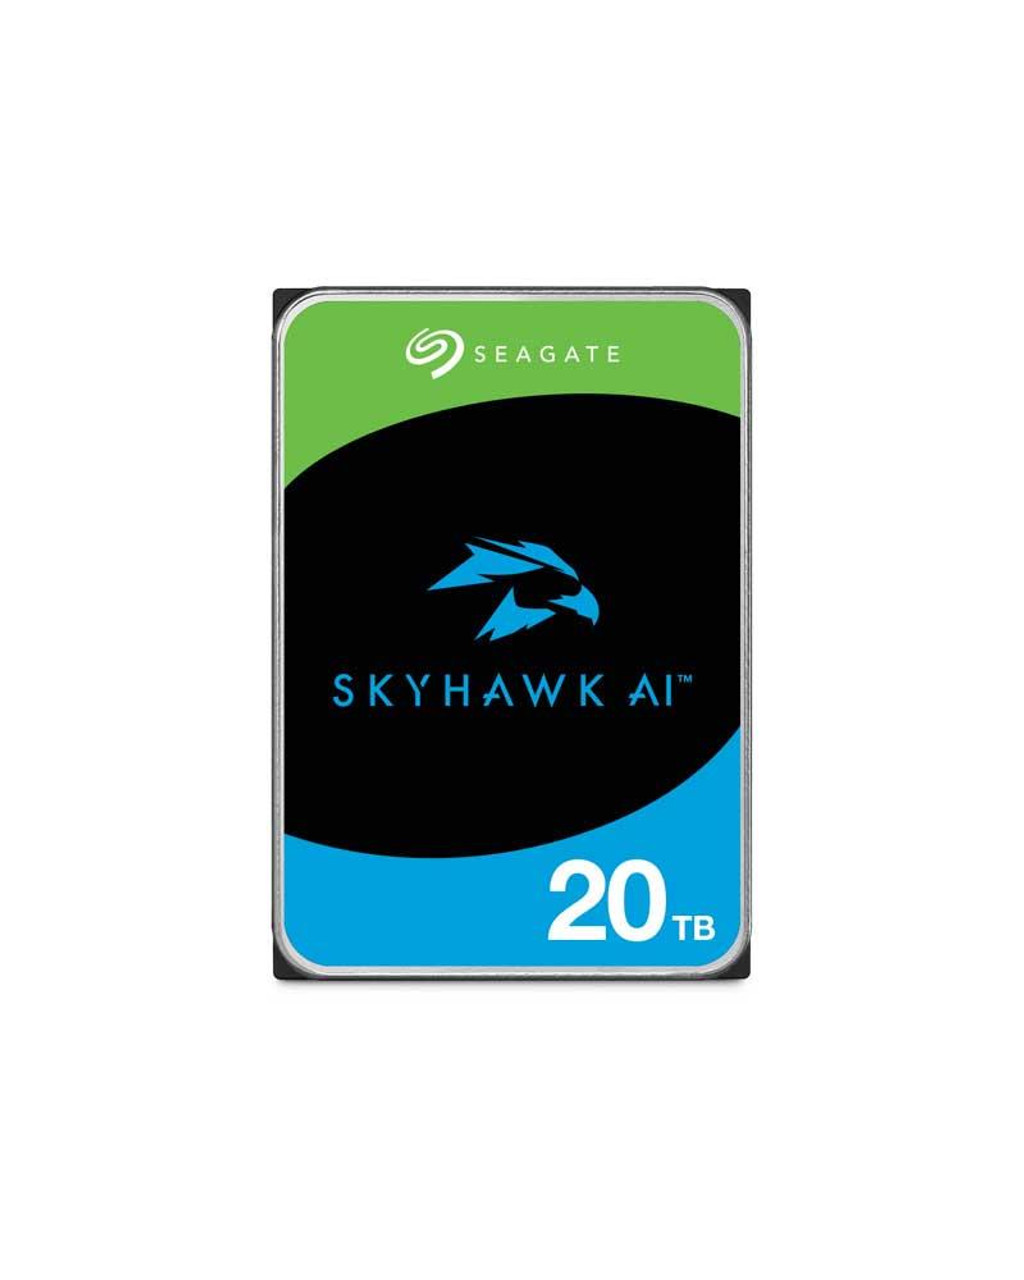 Seagate Skyhawk Ai Hard Drive 20TB SATA 6GB S